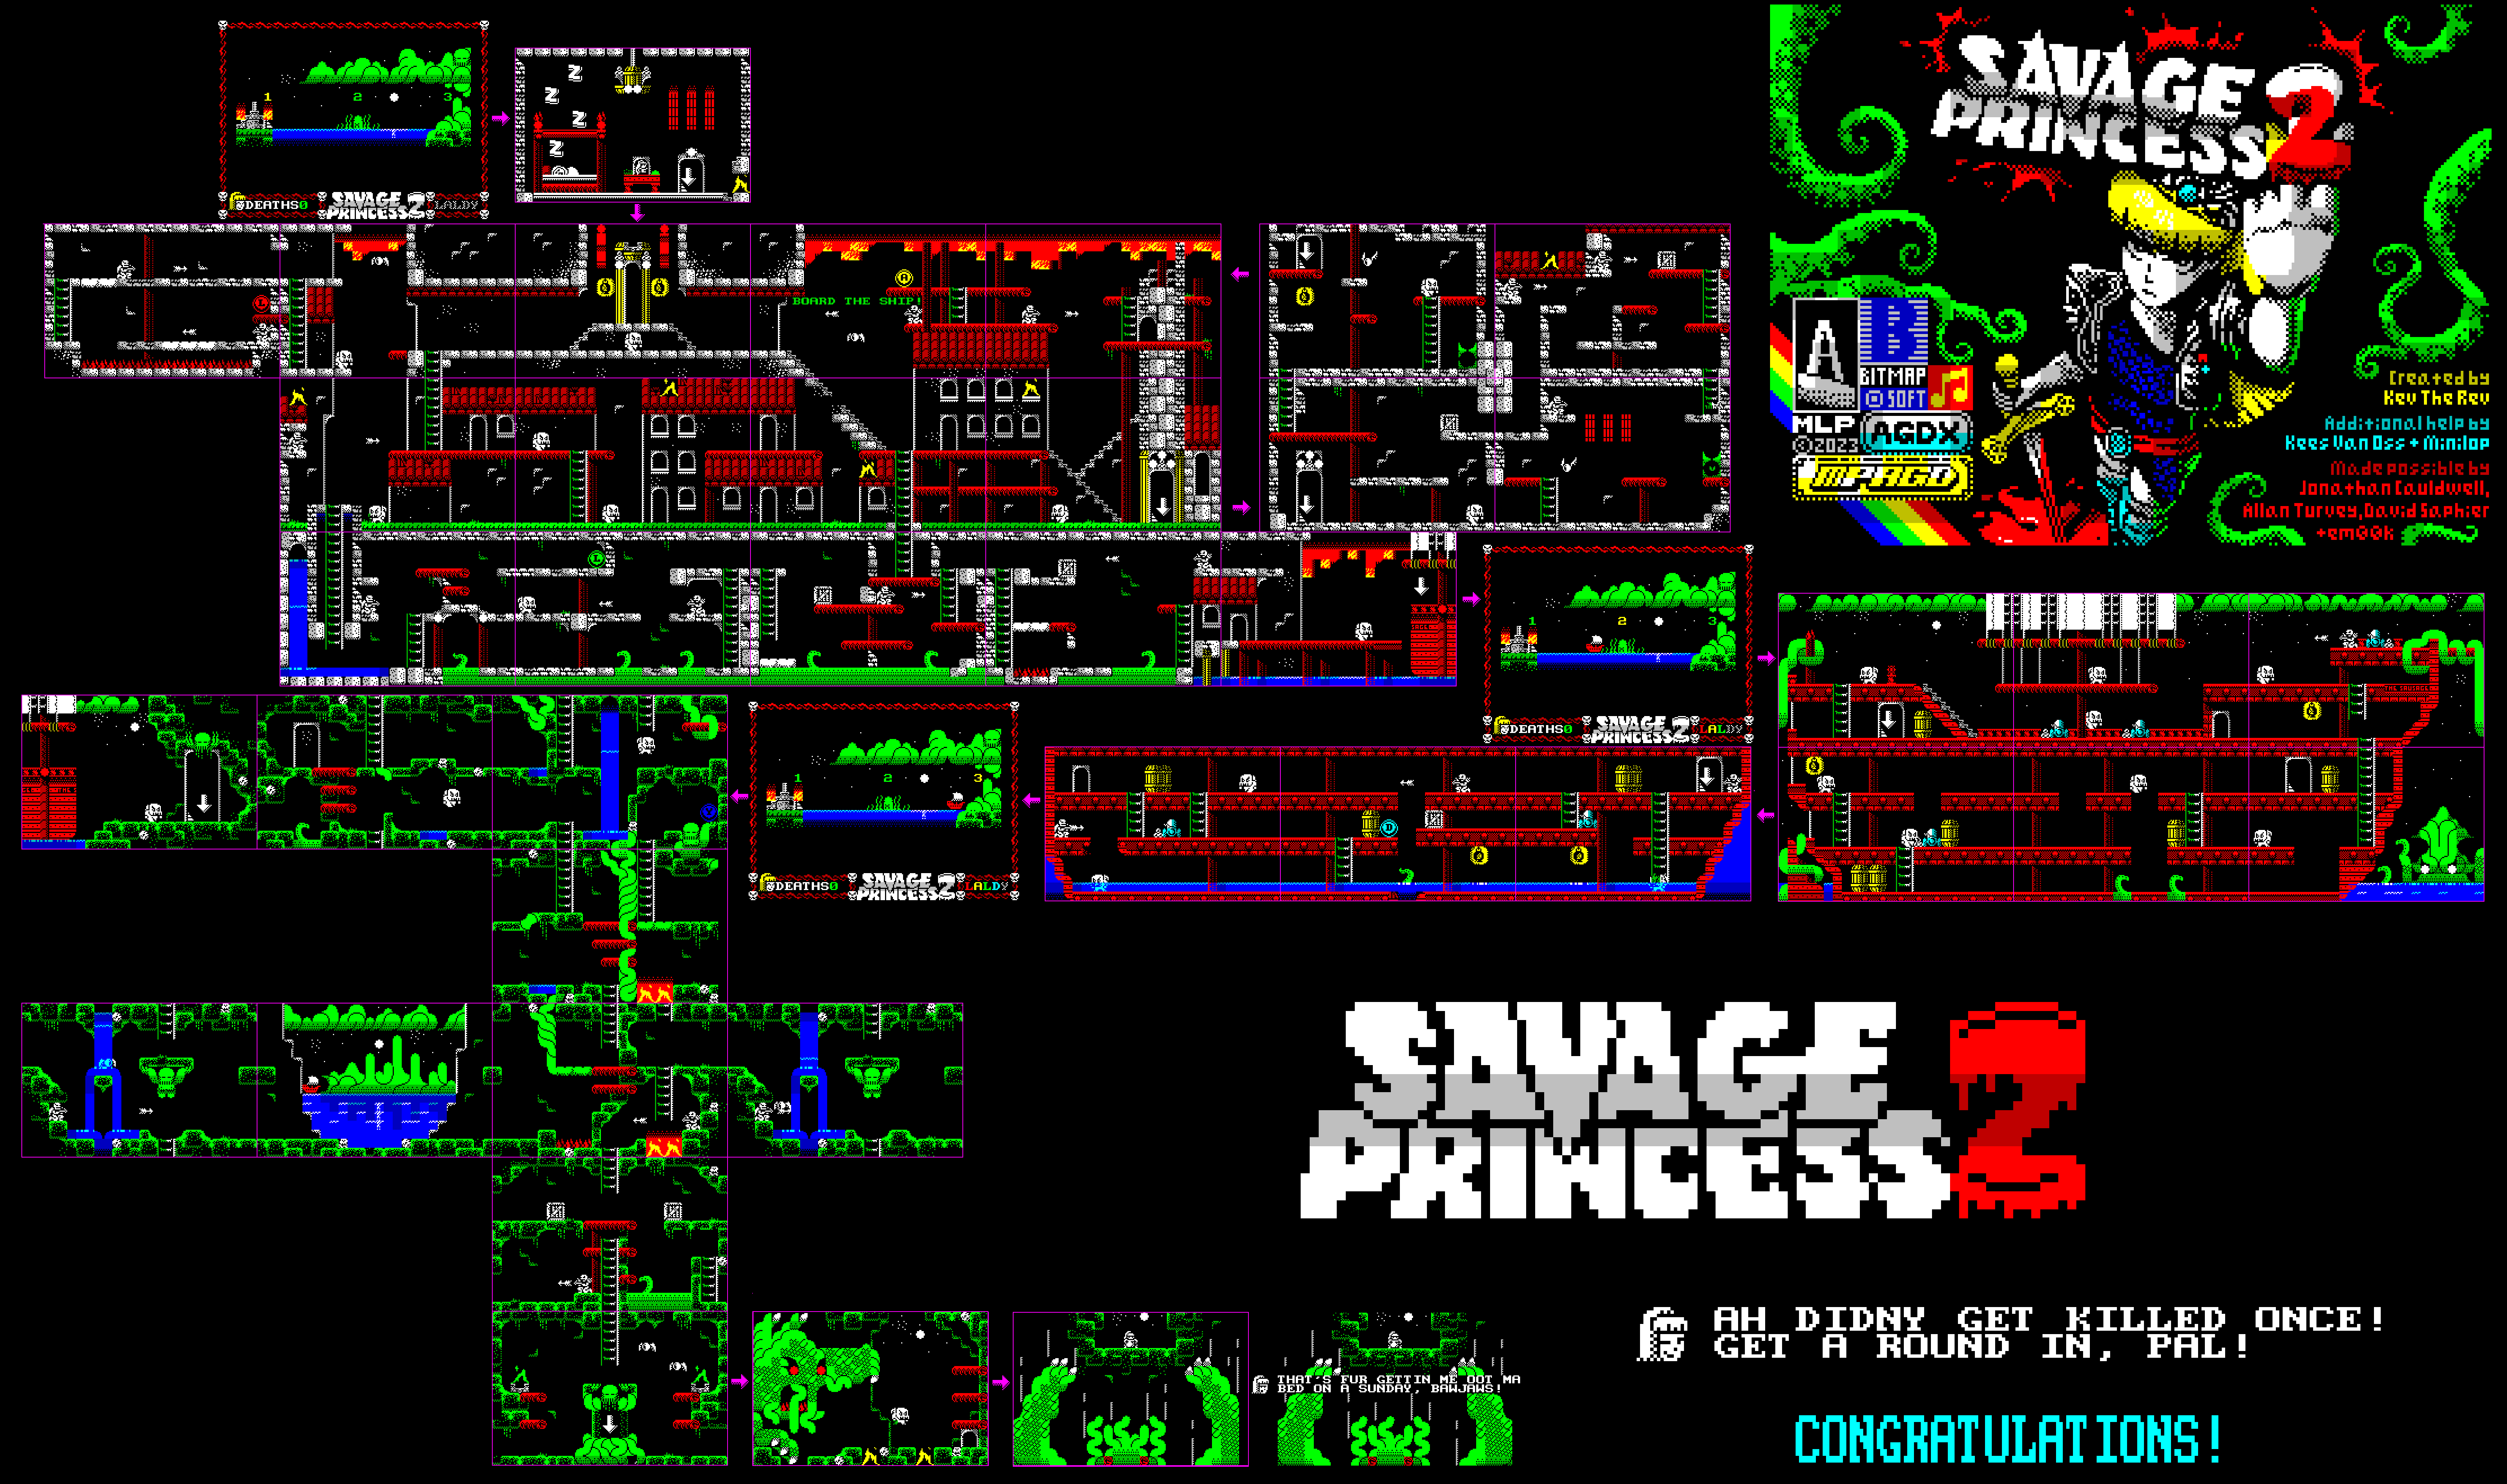 Savage Princess 2 - The Map